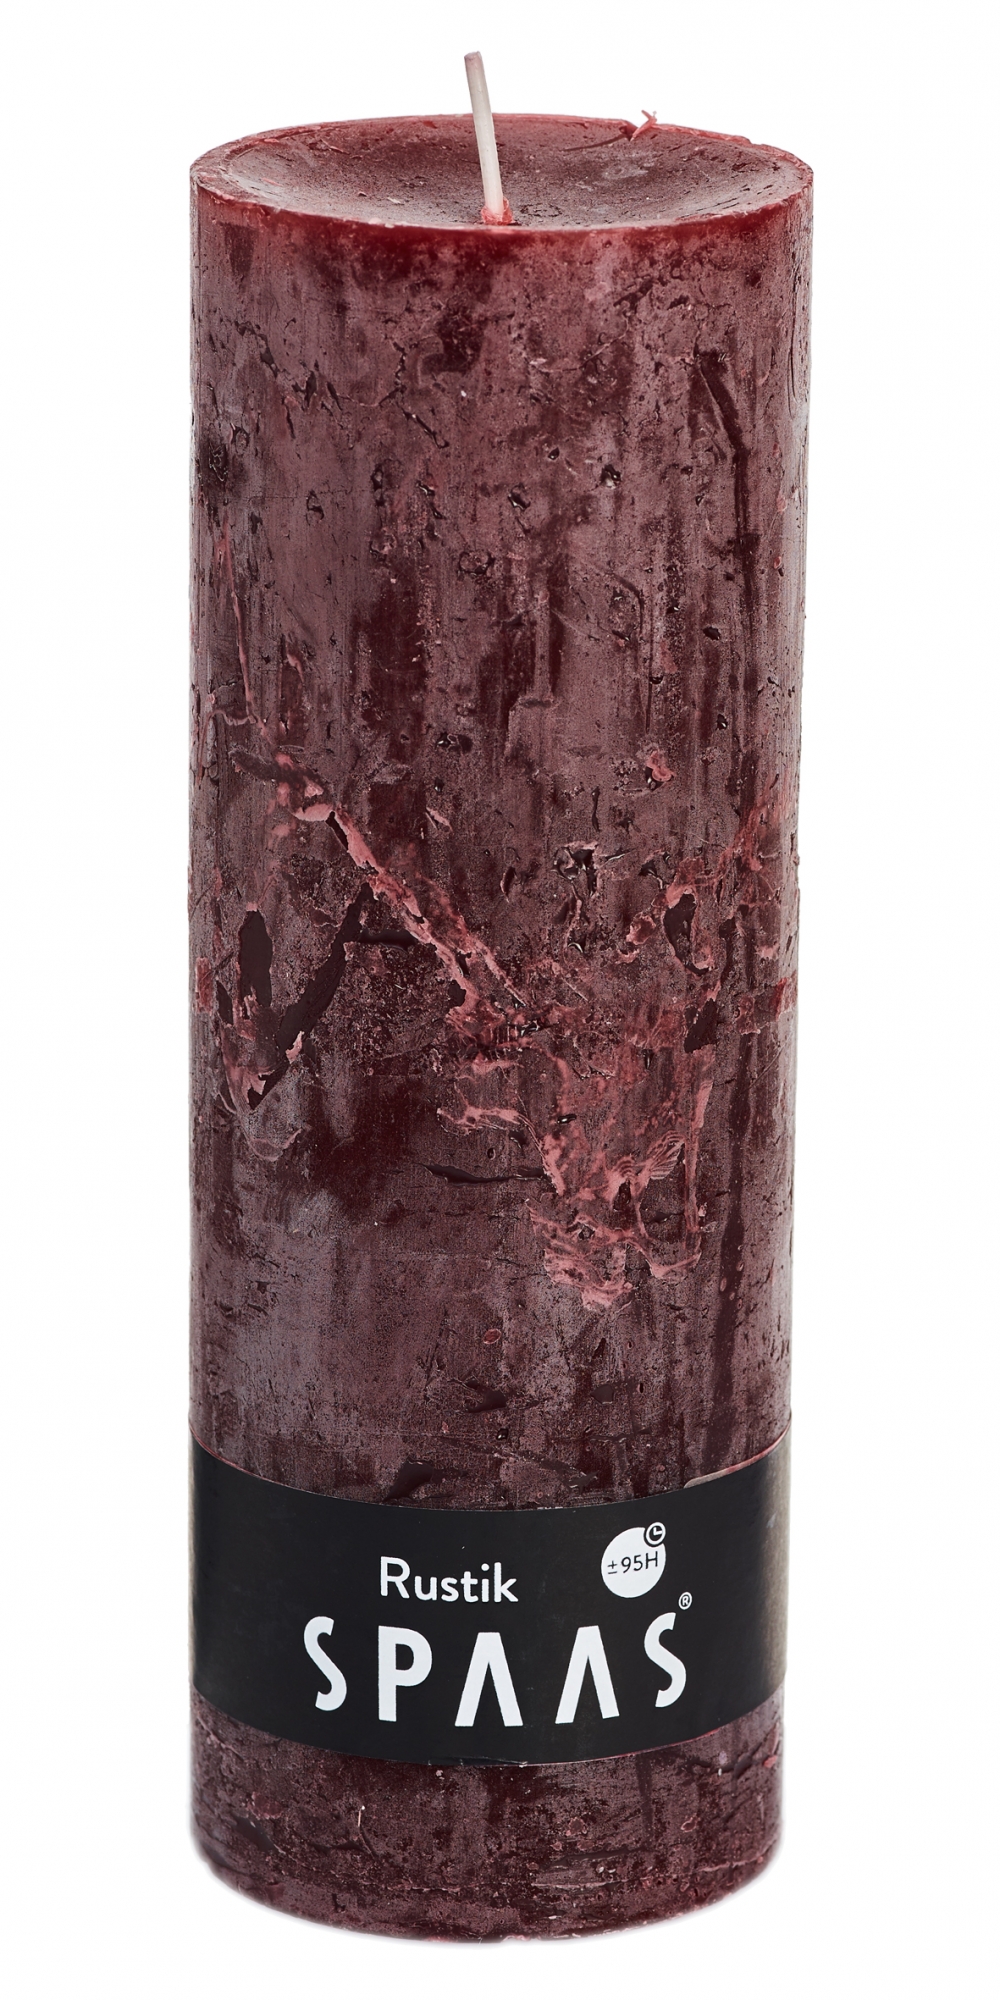 Kynttilä Rustik 70 x 190mm 95h viininpunainen